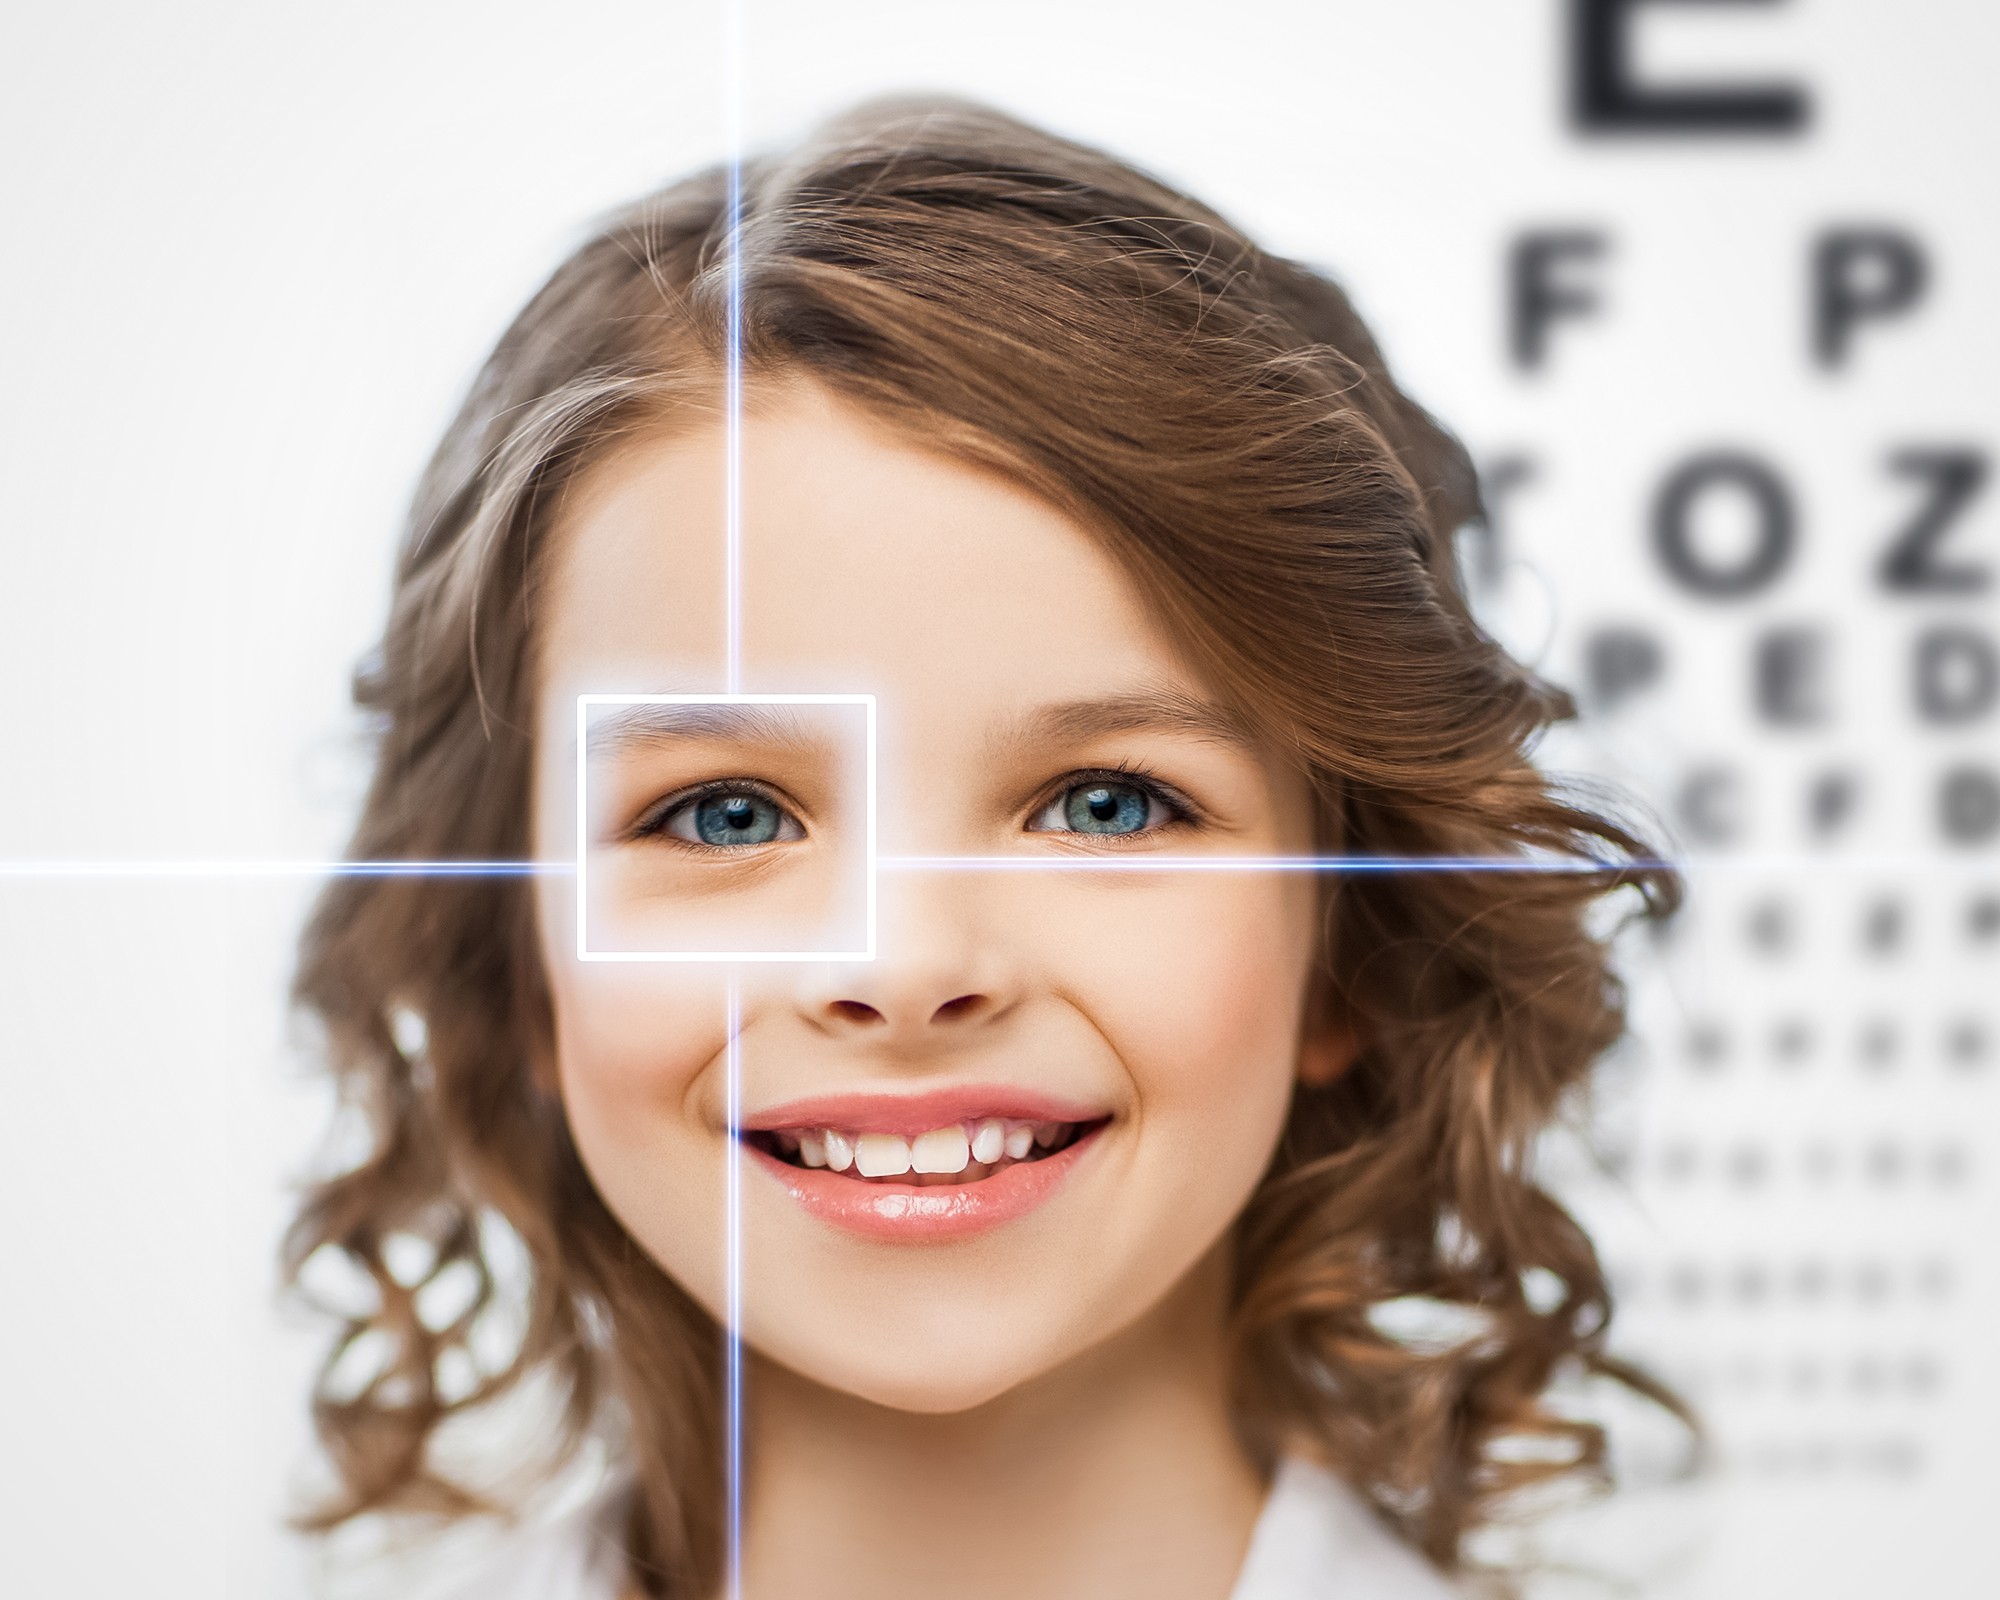 children's eye conditions